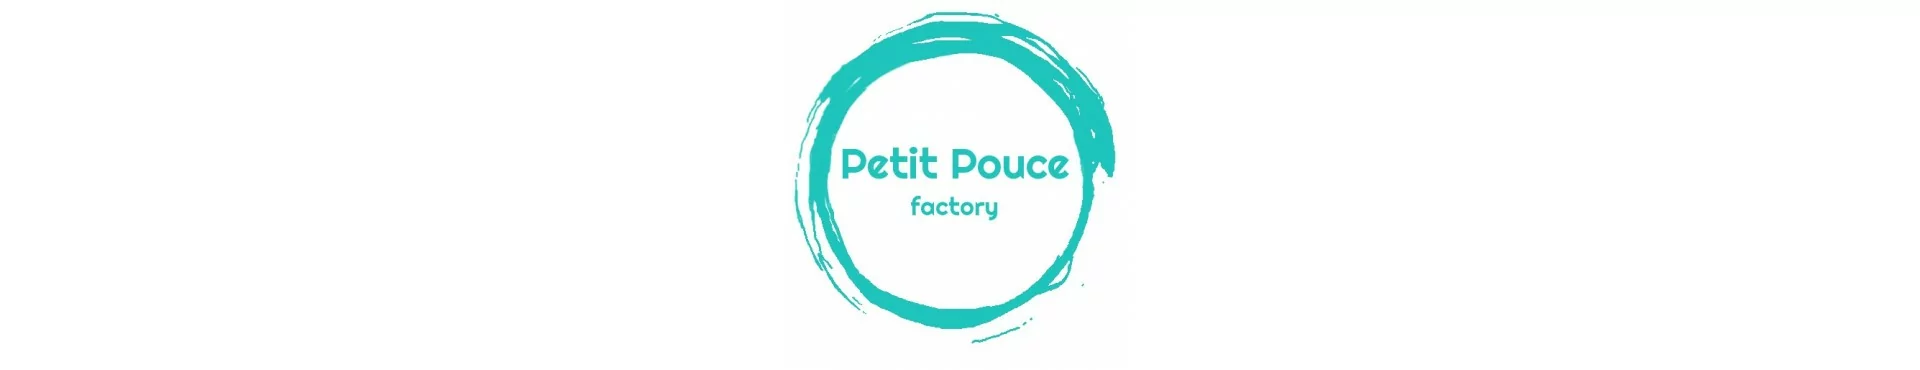 Découvrez la marque Petit Pouce Factory et ses personnages